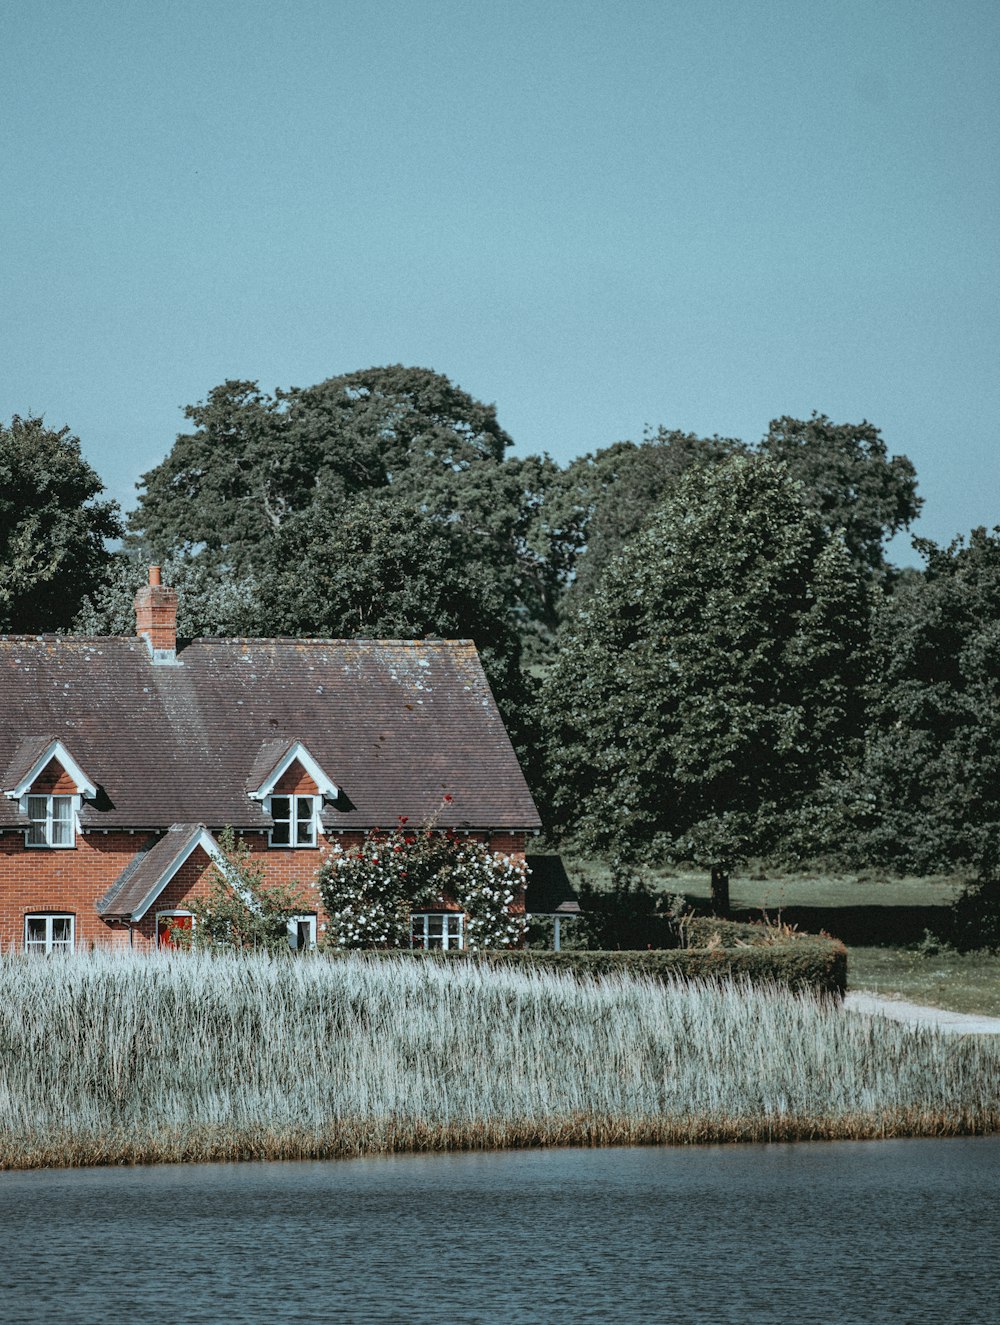 Haus in der Nähe eines Gewässers unter blauem Himmel